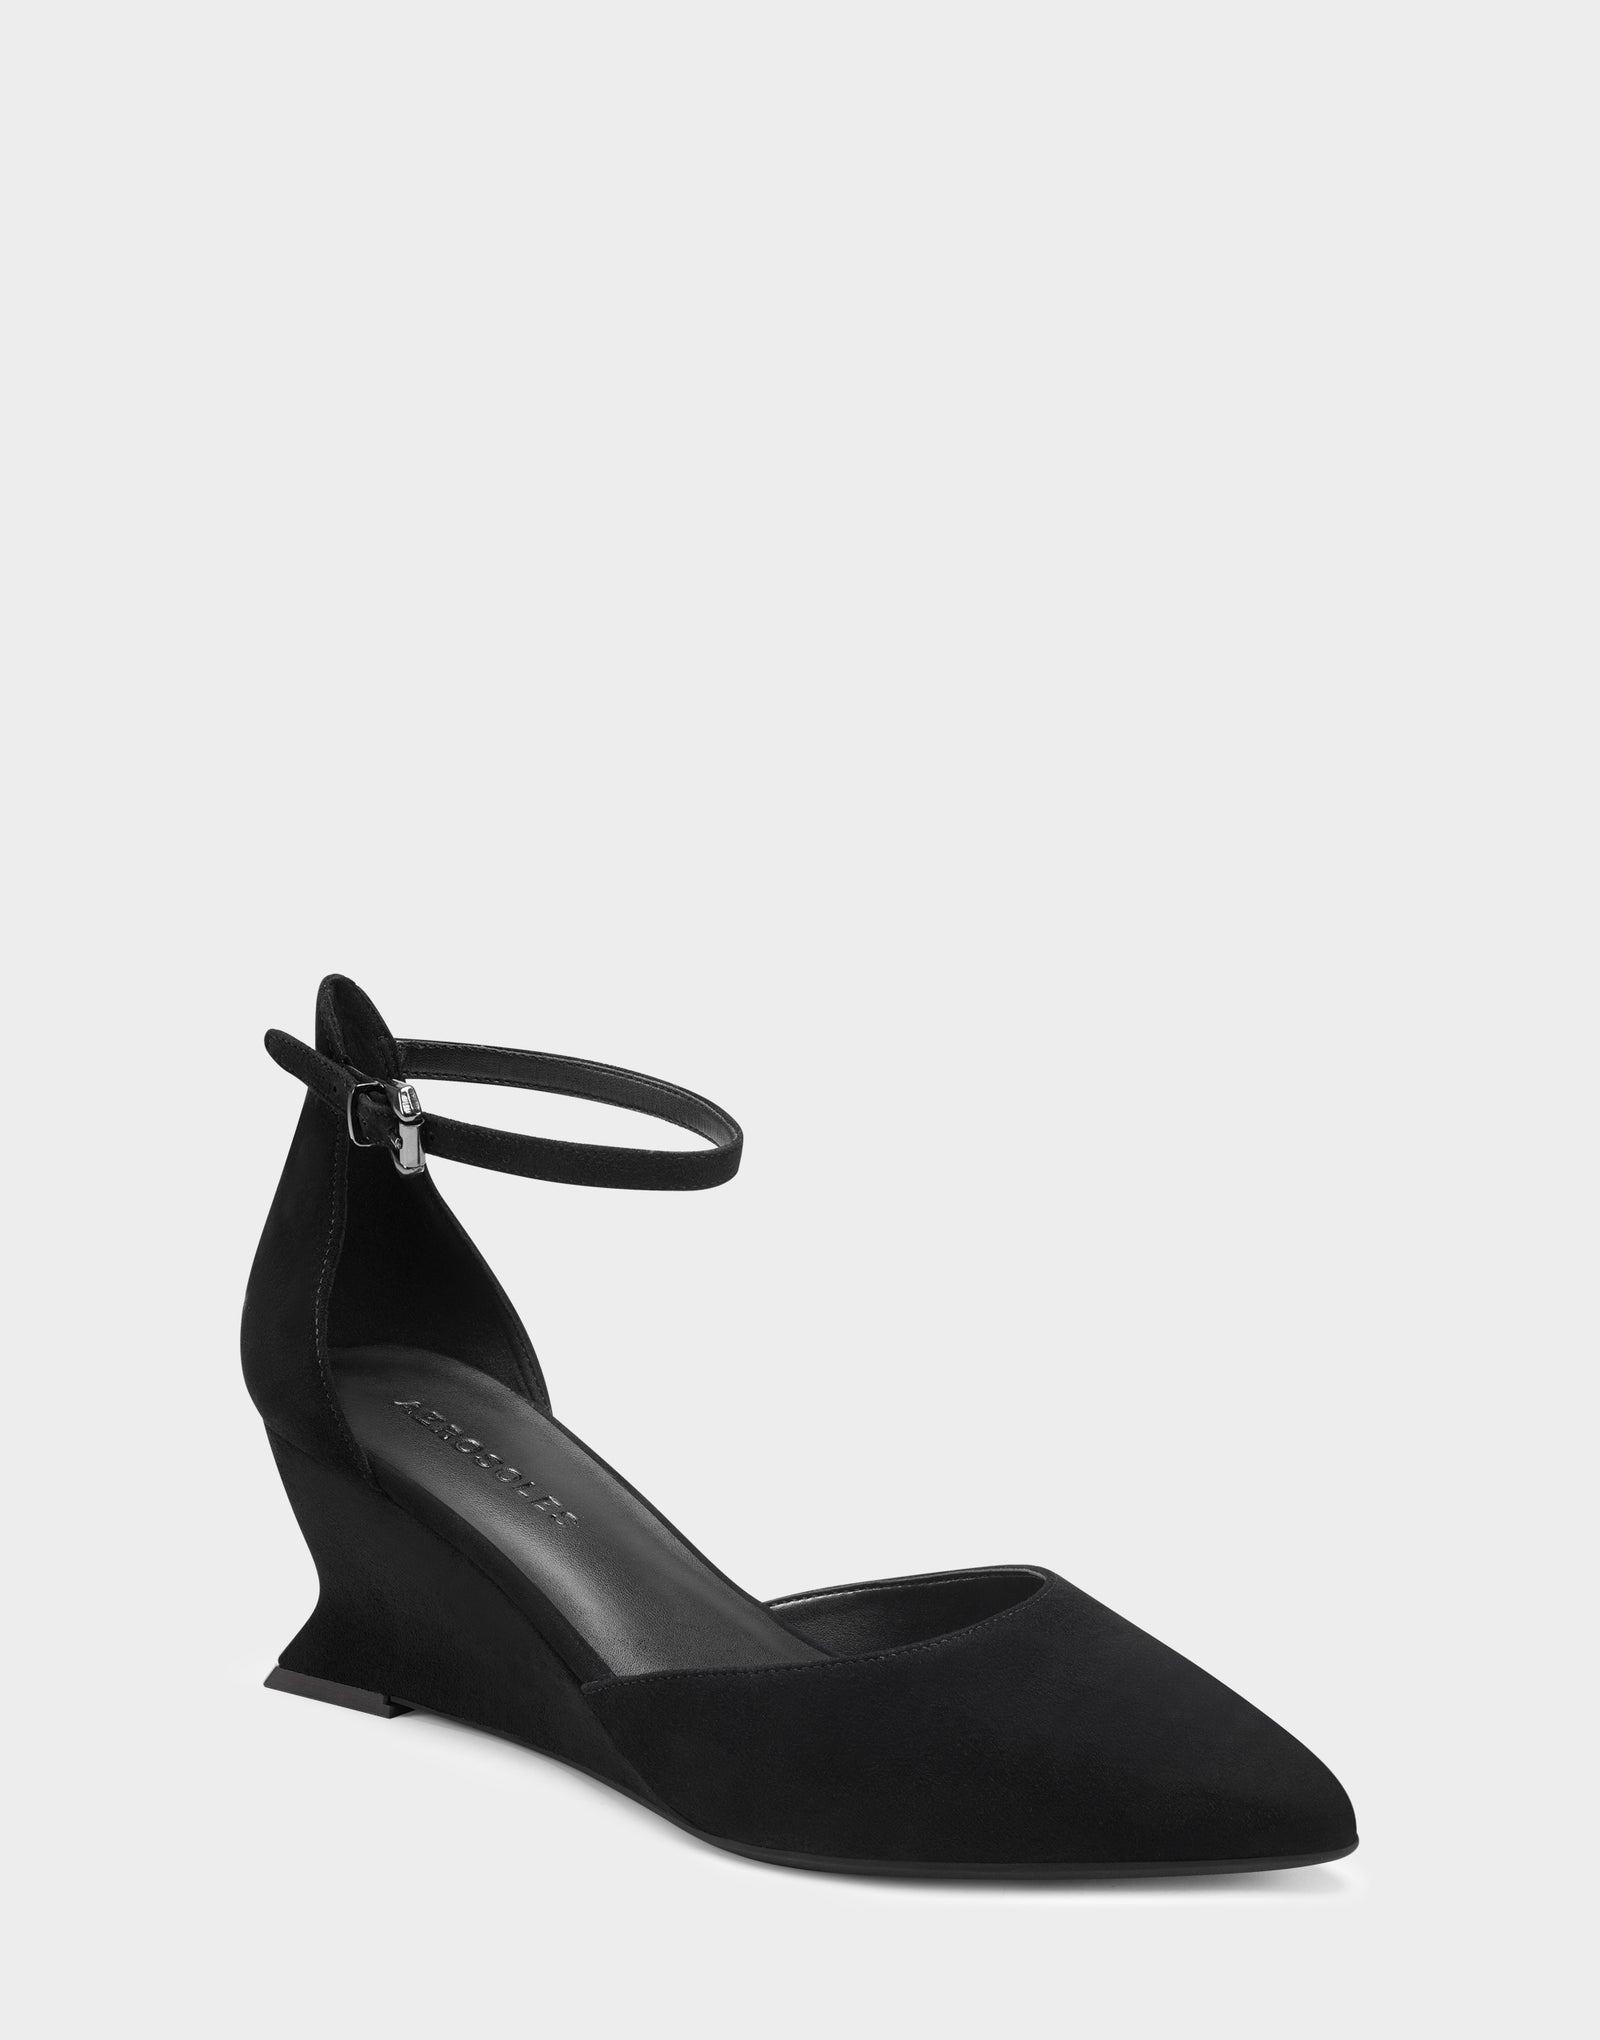 black wedges heels suede